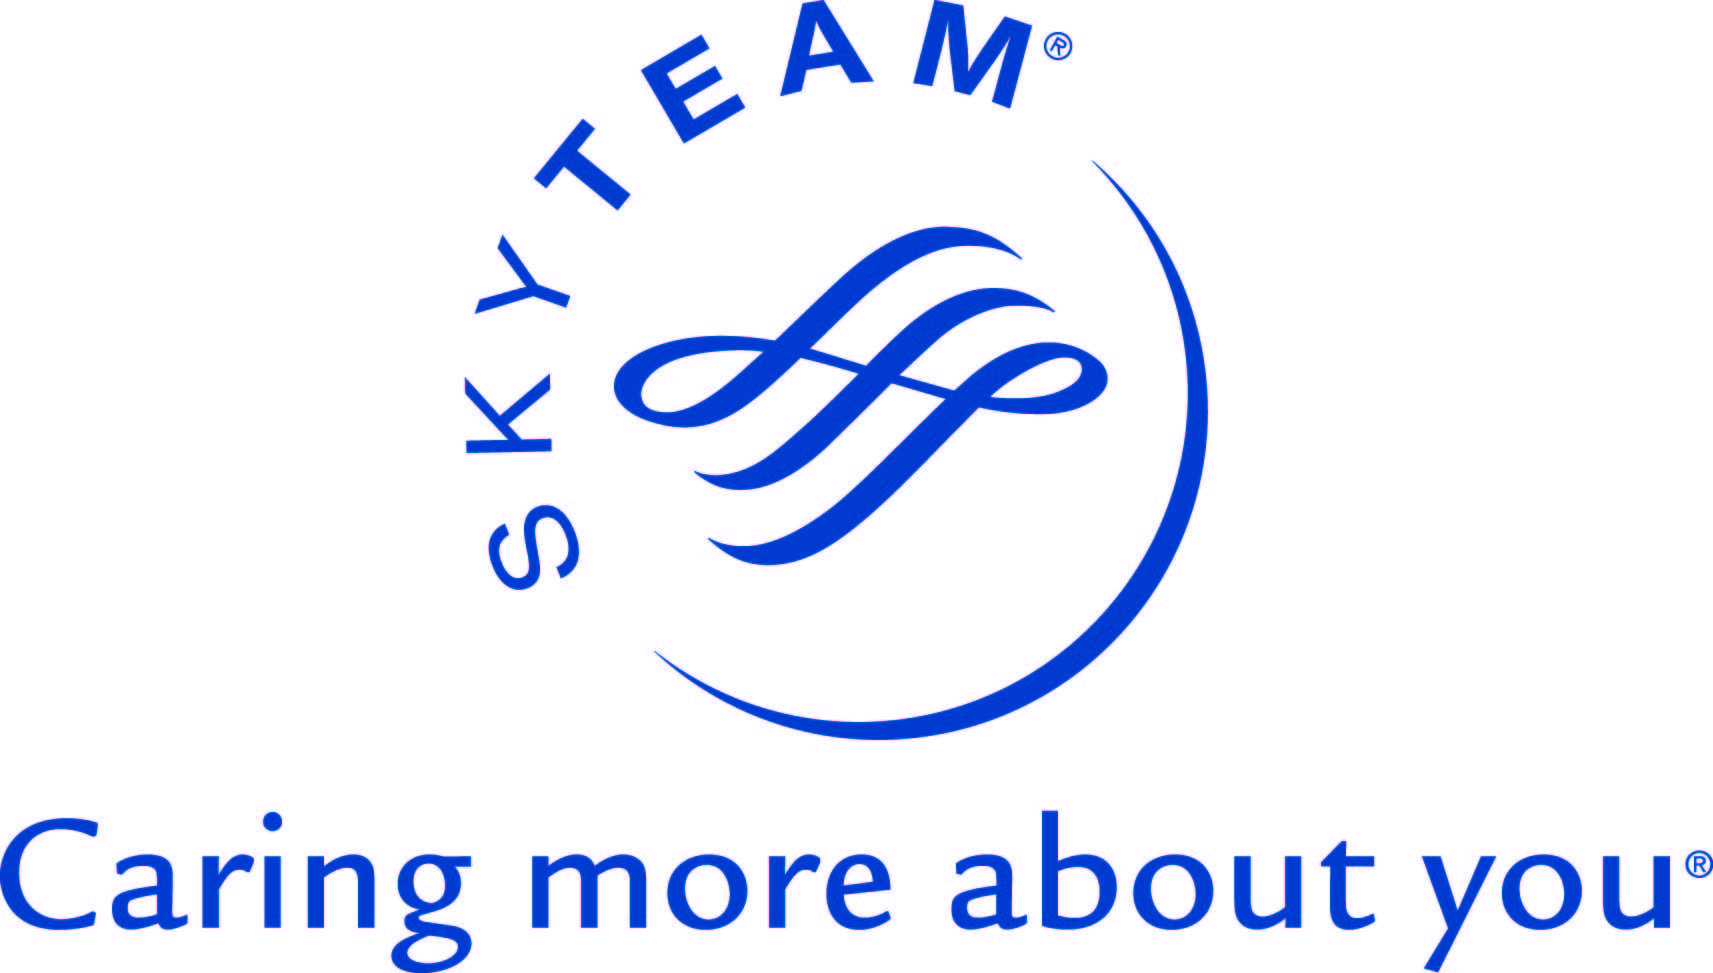 SkyTeam Logo - SkyTeam